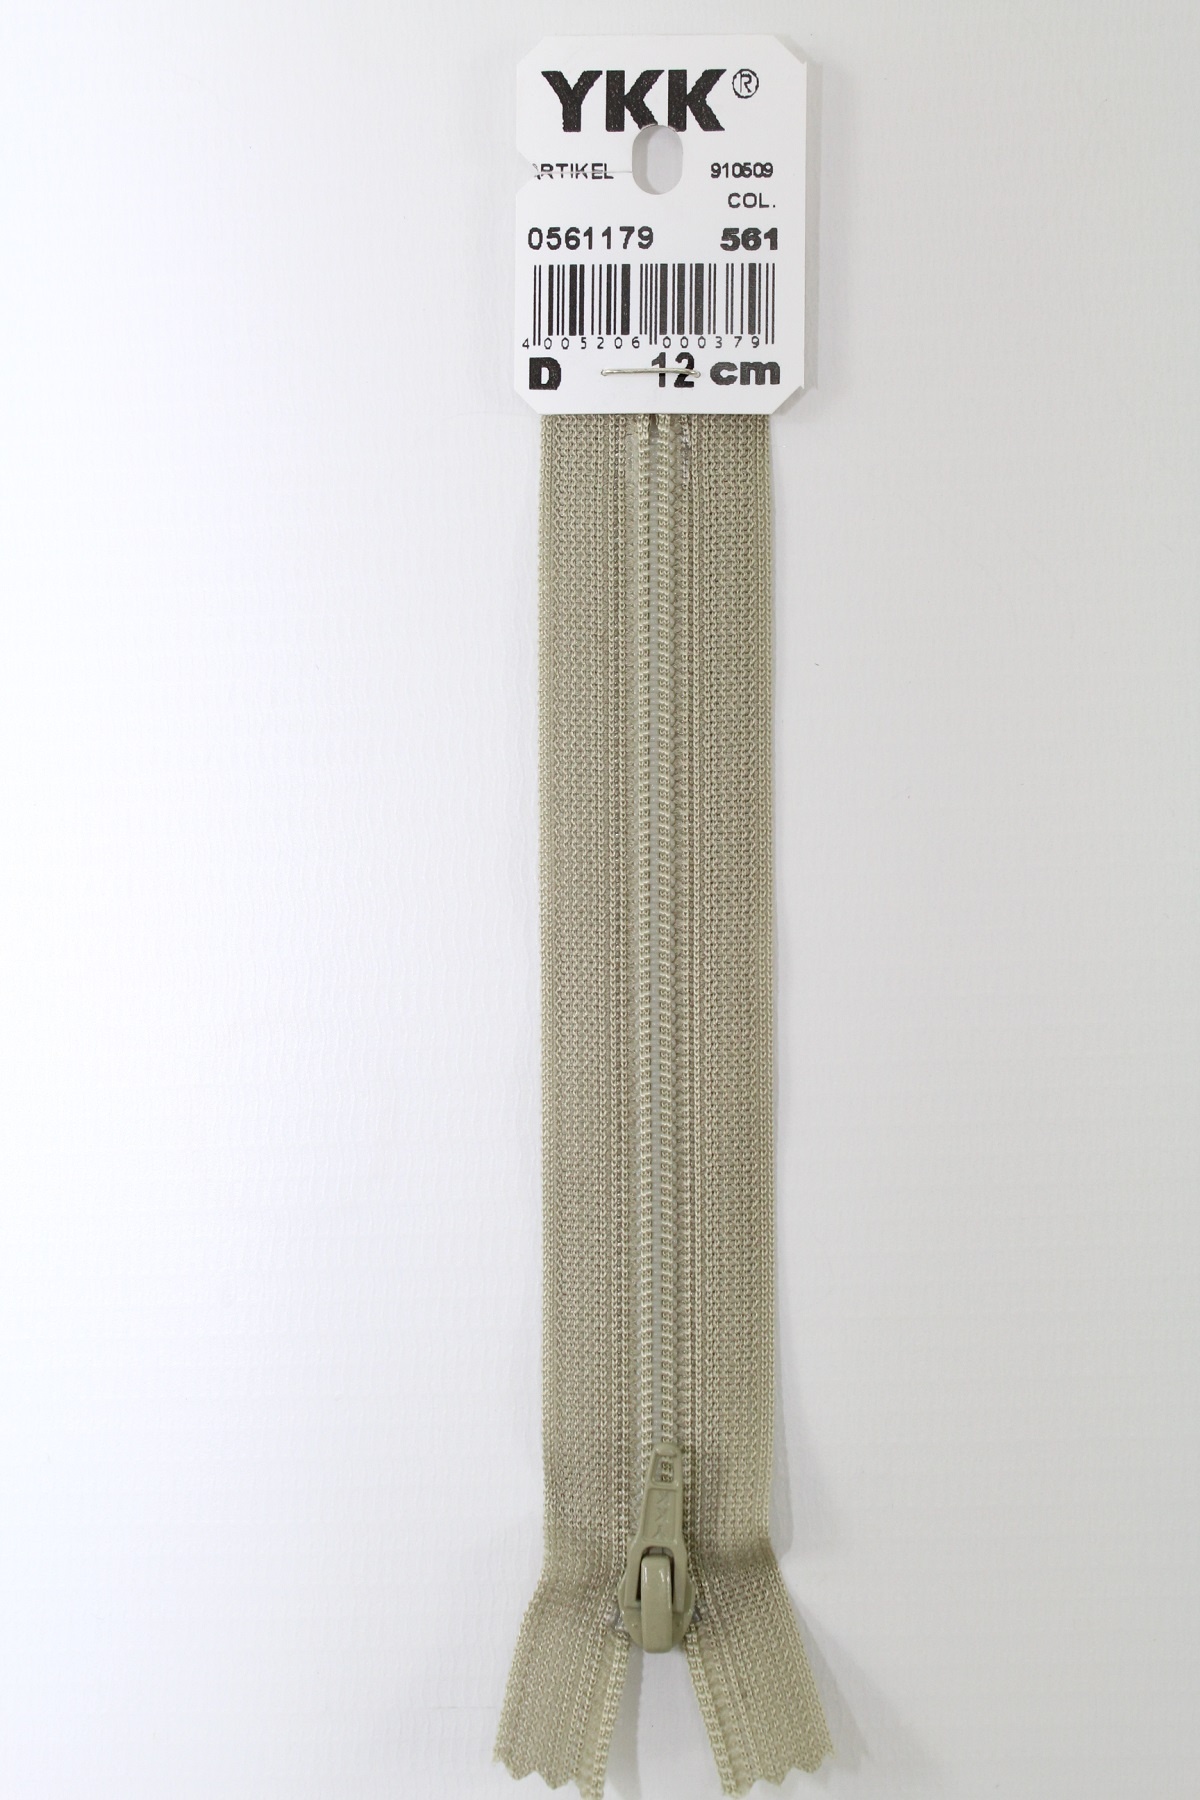 YKK-Reissverschluss 12cm-60cm, nicht teilbar,schlamm